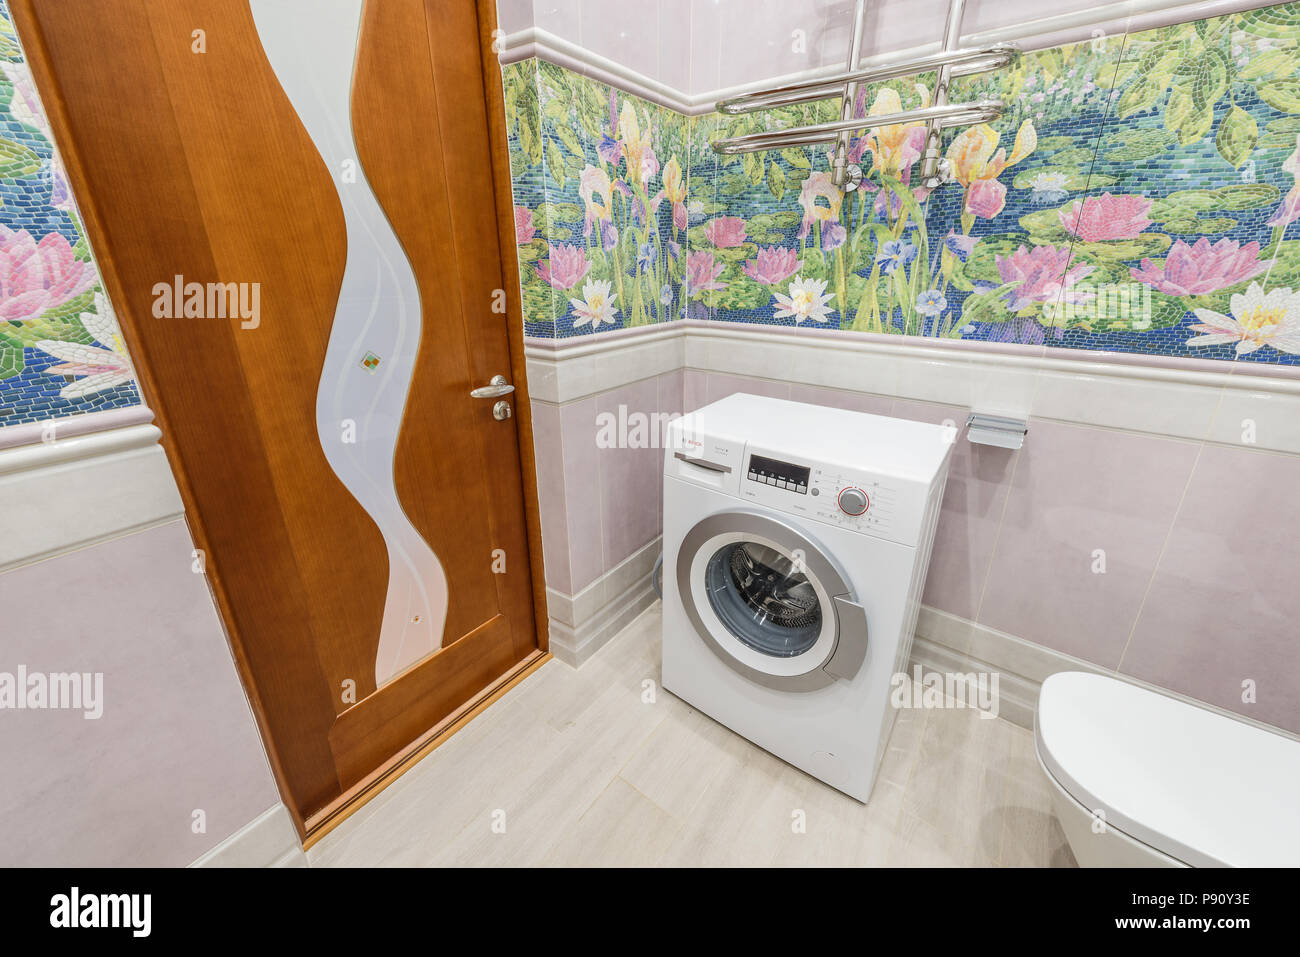 Moskau, Russland - 30. Juni 2018: Waschmaschine und Toilette im Badezimmer. Stockfoto